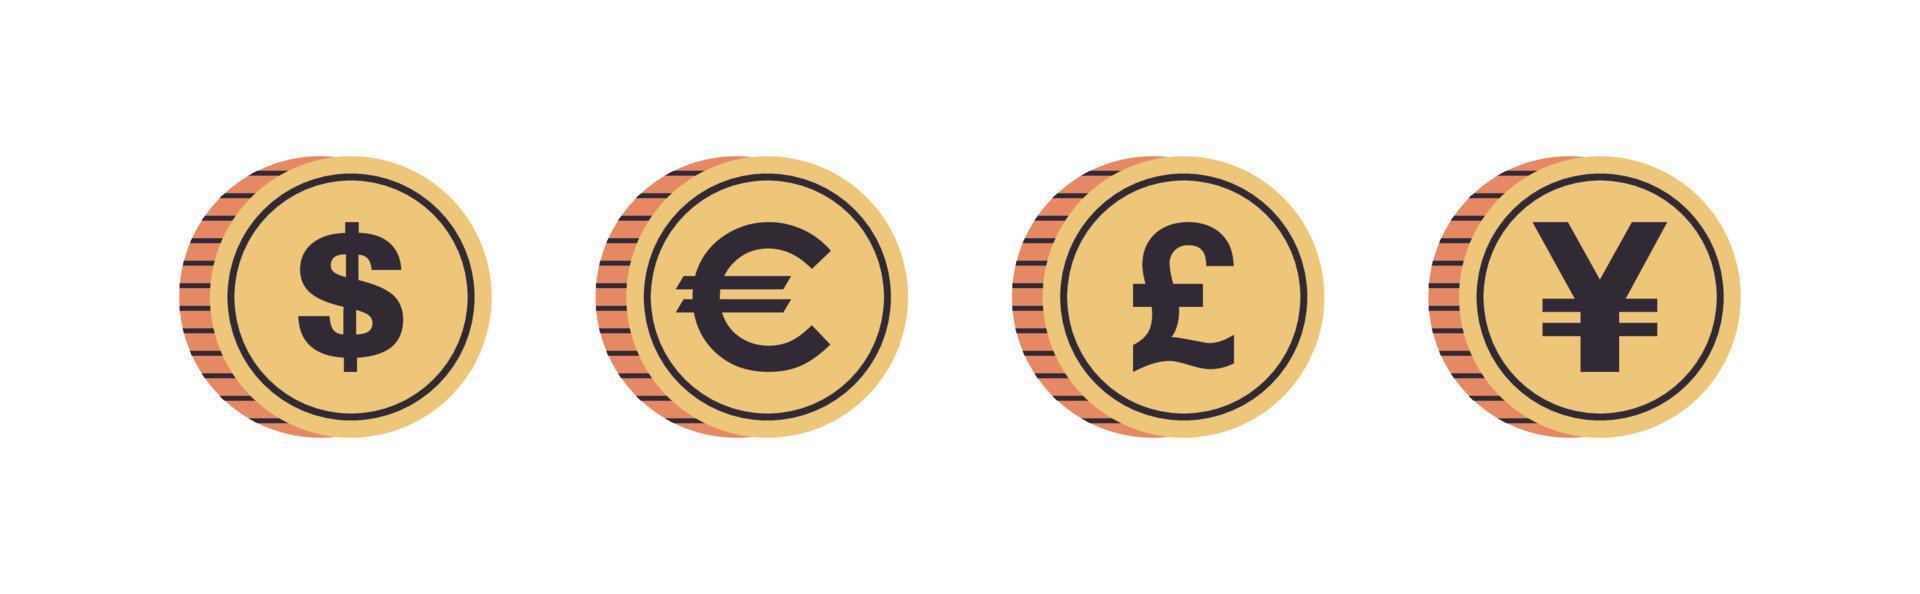 Münzen der internationalen Währung und Dollar, Euro, Pfund, Yen auf weißem Hintergrund horizontale flache Vektorillustration in voller Länge. vektor